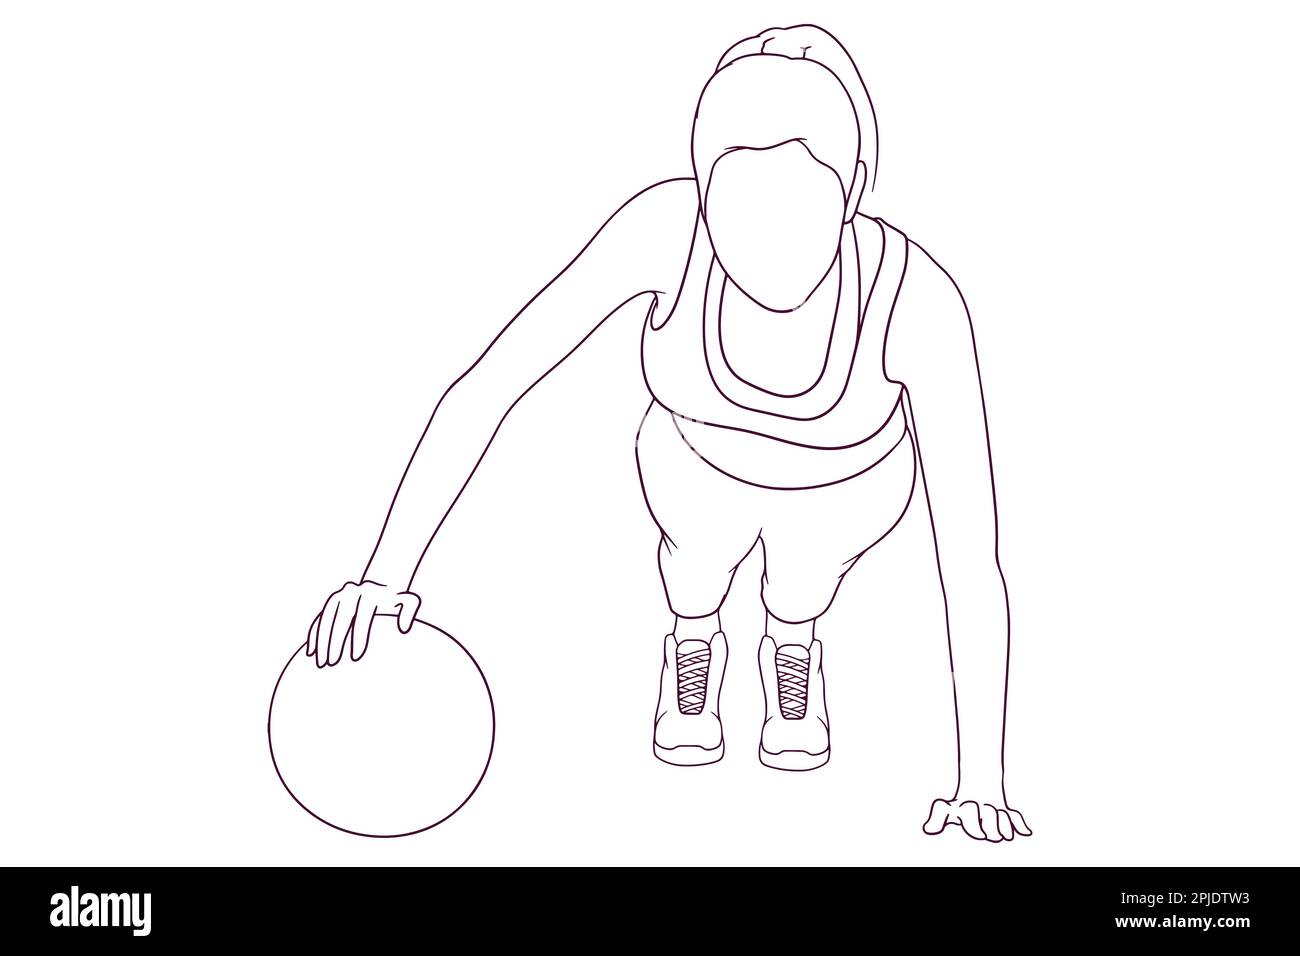 Femme faisant des retouches avec boule dessin à la main illustration vectorielle Illustration de Vecteur